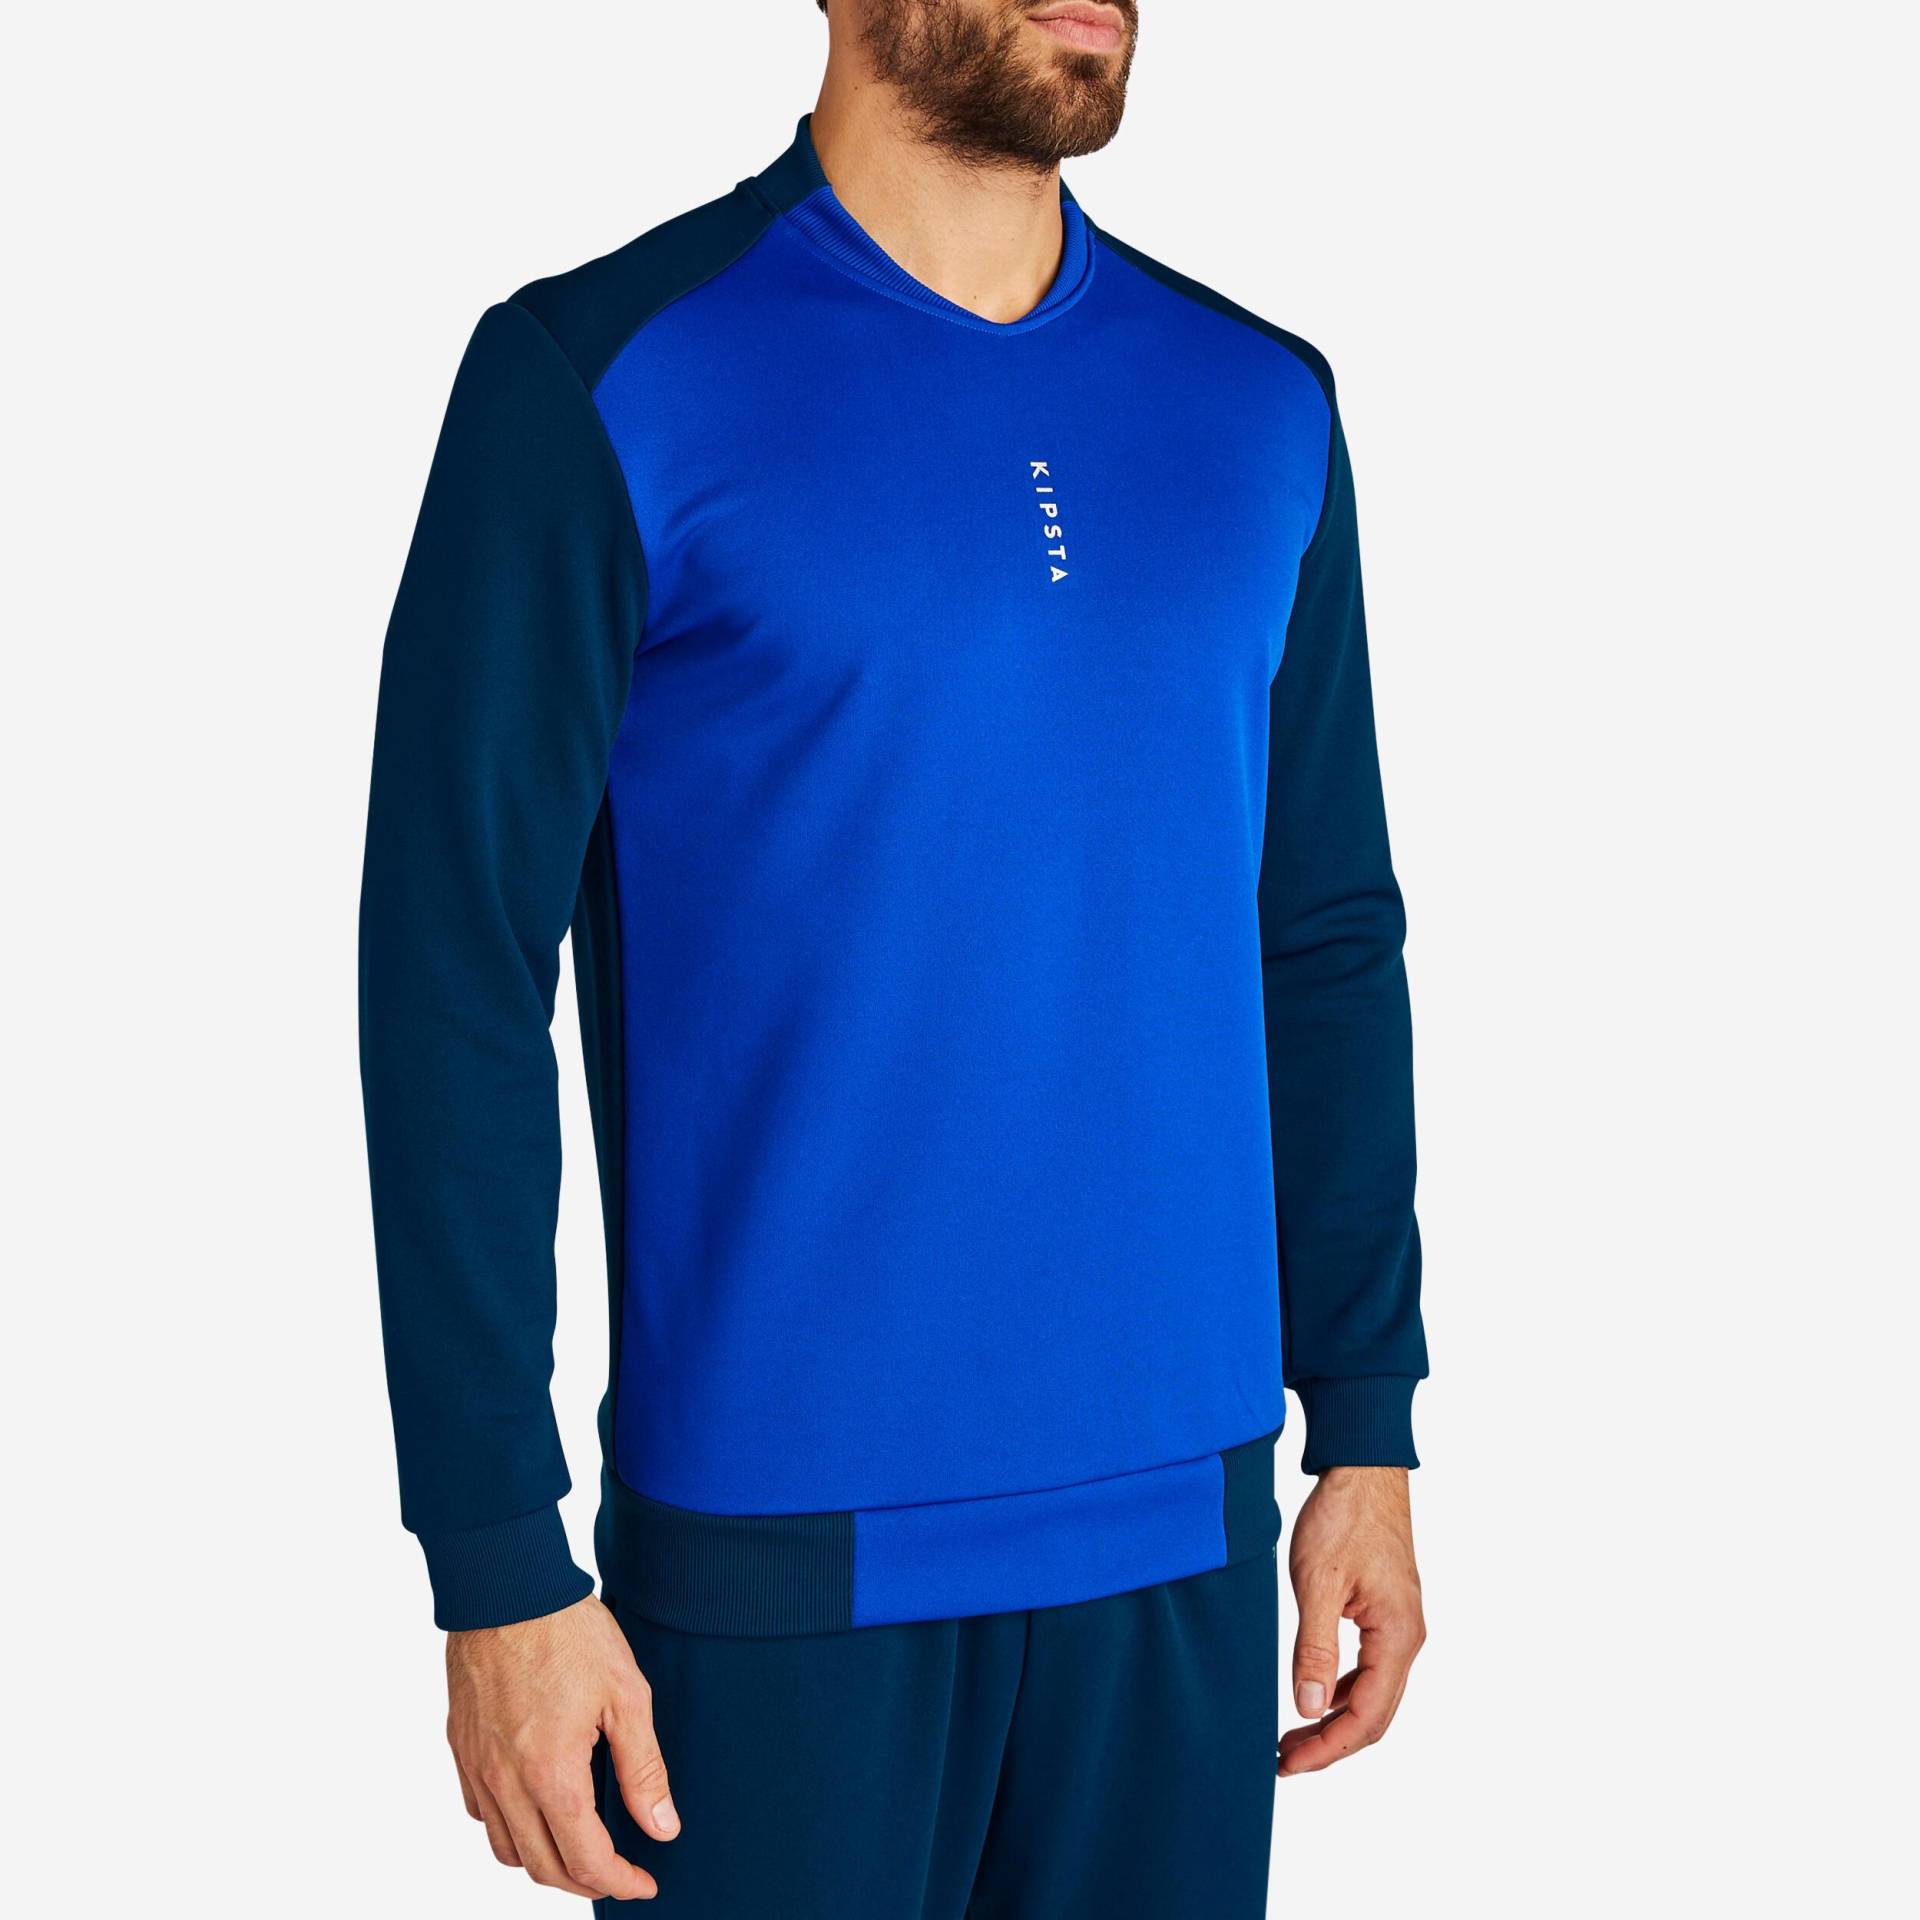 Sweatshirt - T100 Damen Blau Bedruckt XL von KIPSTA